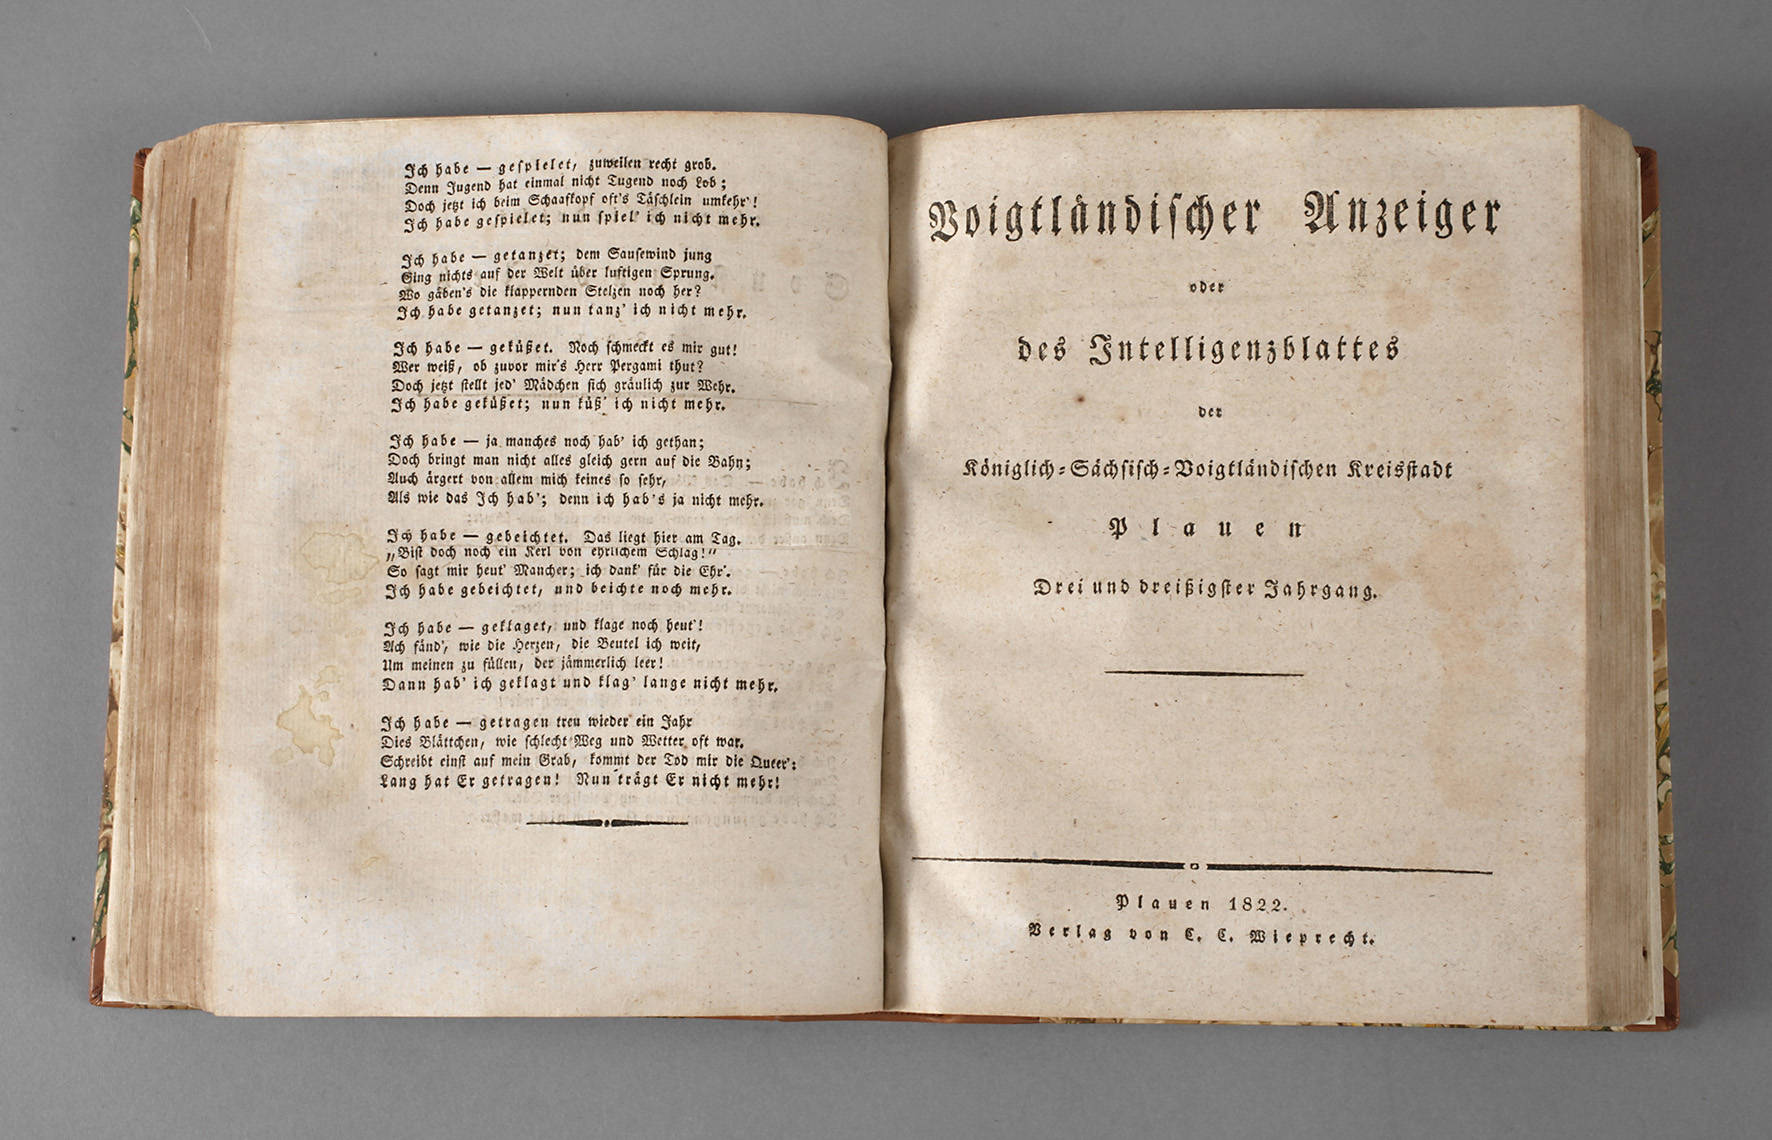 Voigtländischer Anzeiger 1821 und 1822